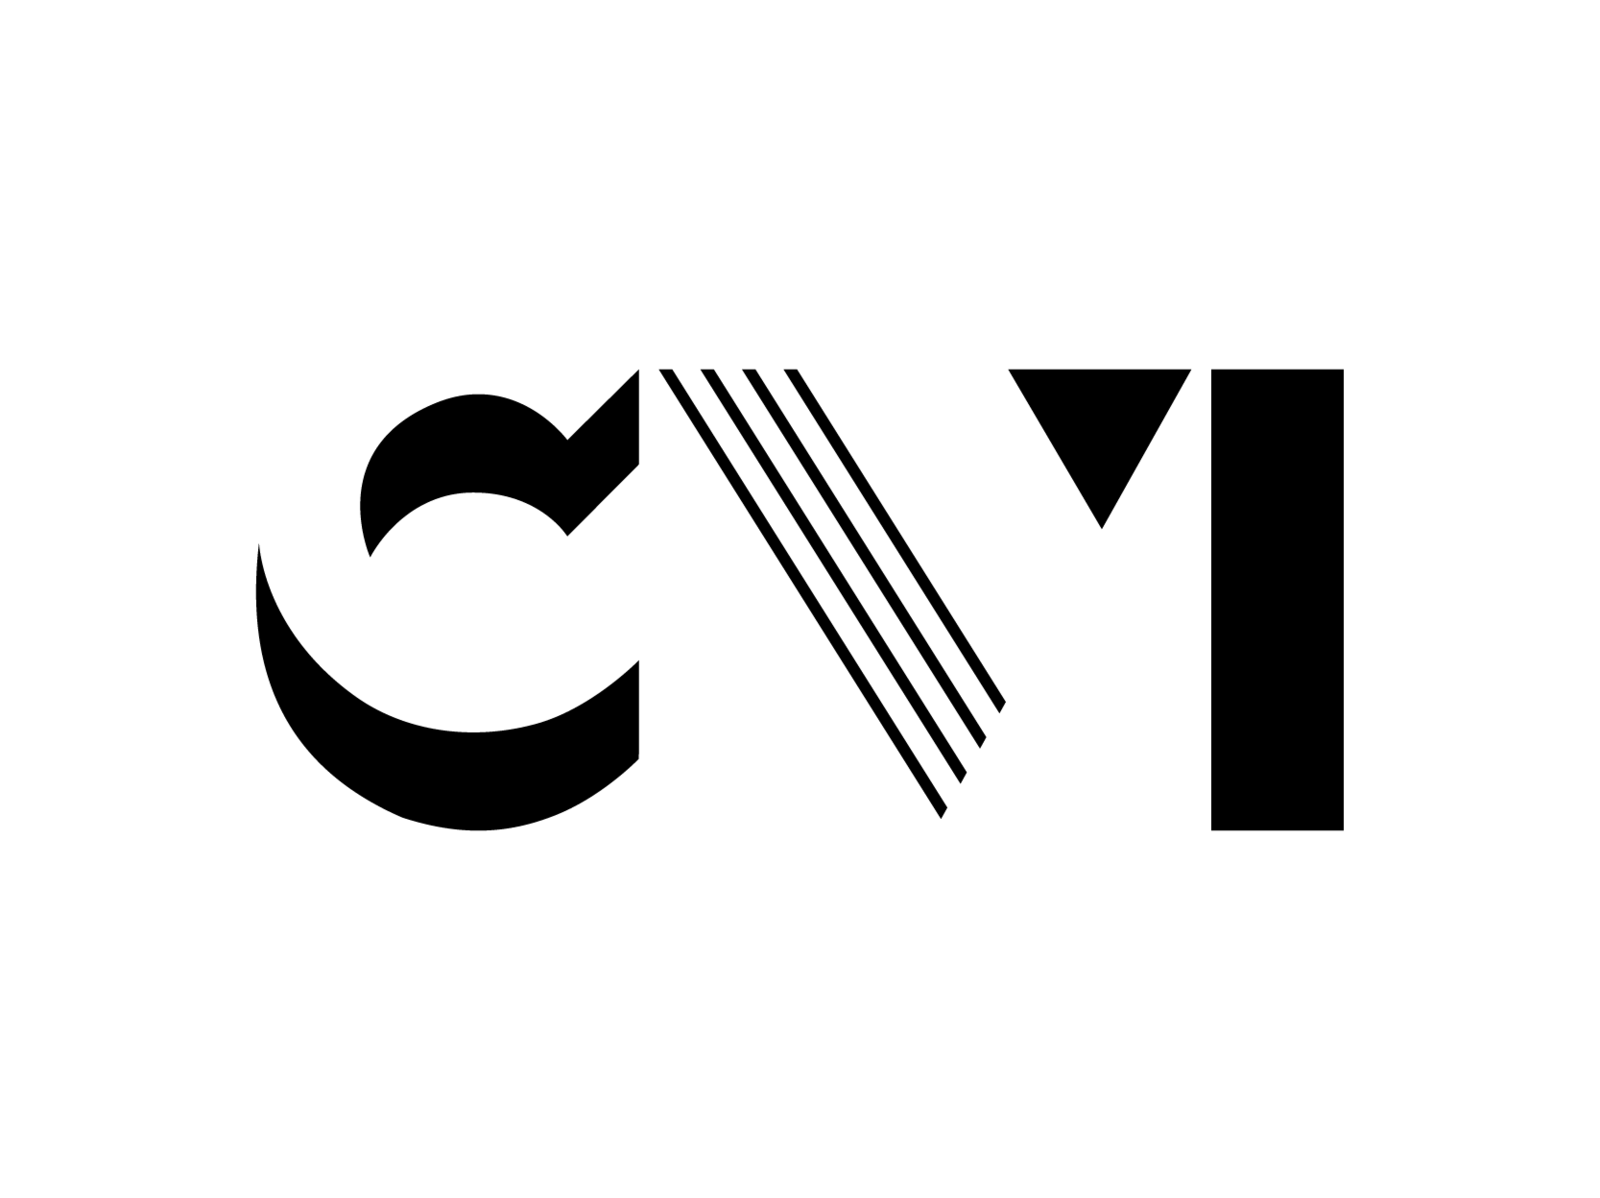 Logo CV1 by Milla Almeida on Dribbble